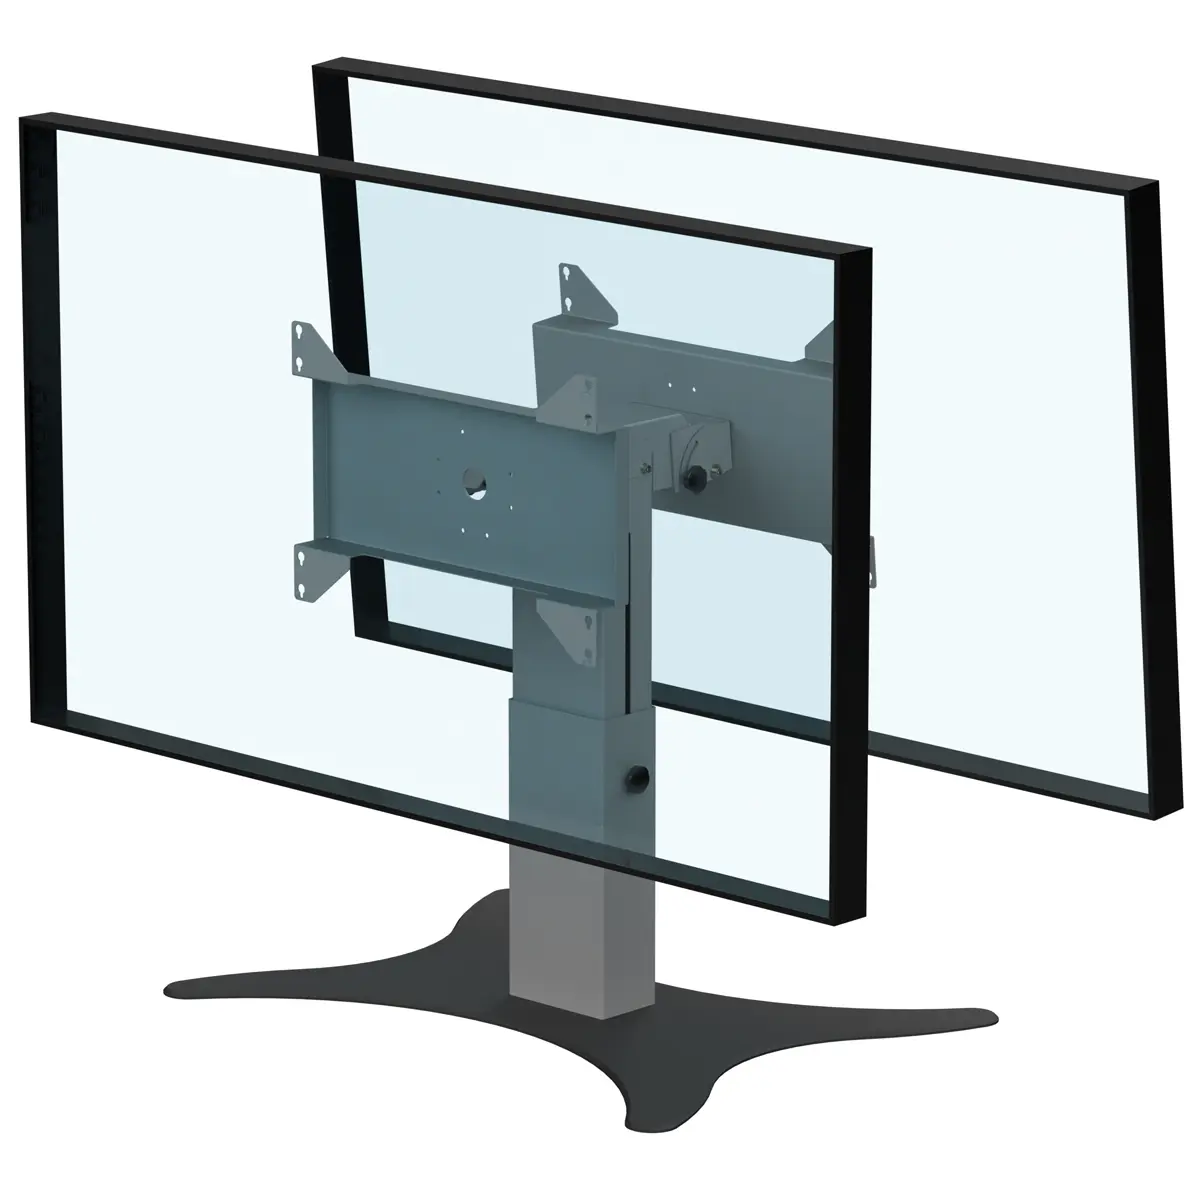 Support double écrans bas retour écran hauteur réglable 500-800mm réglable en hauteur avec embase type B